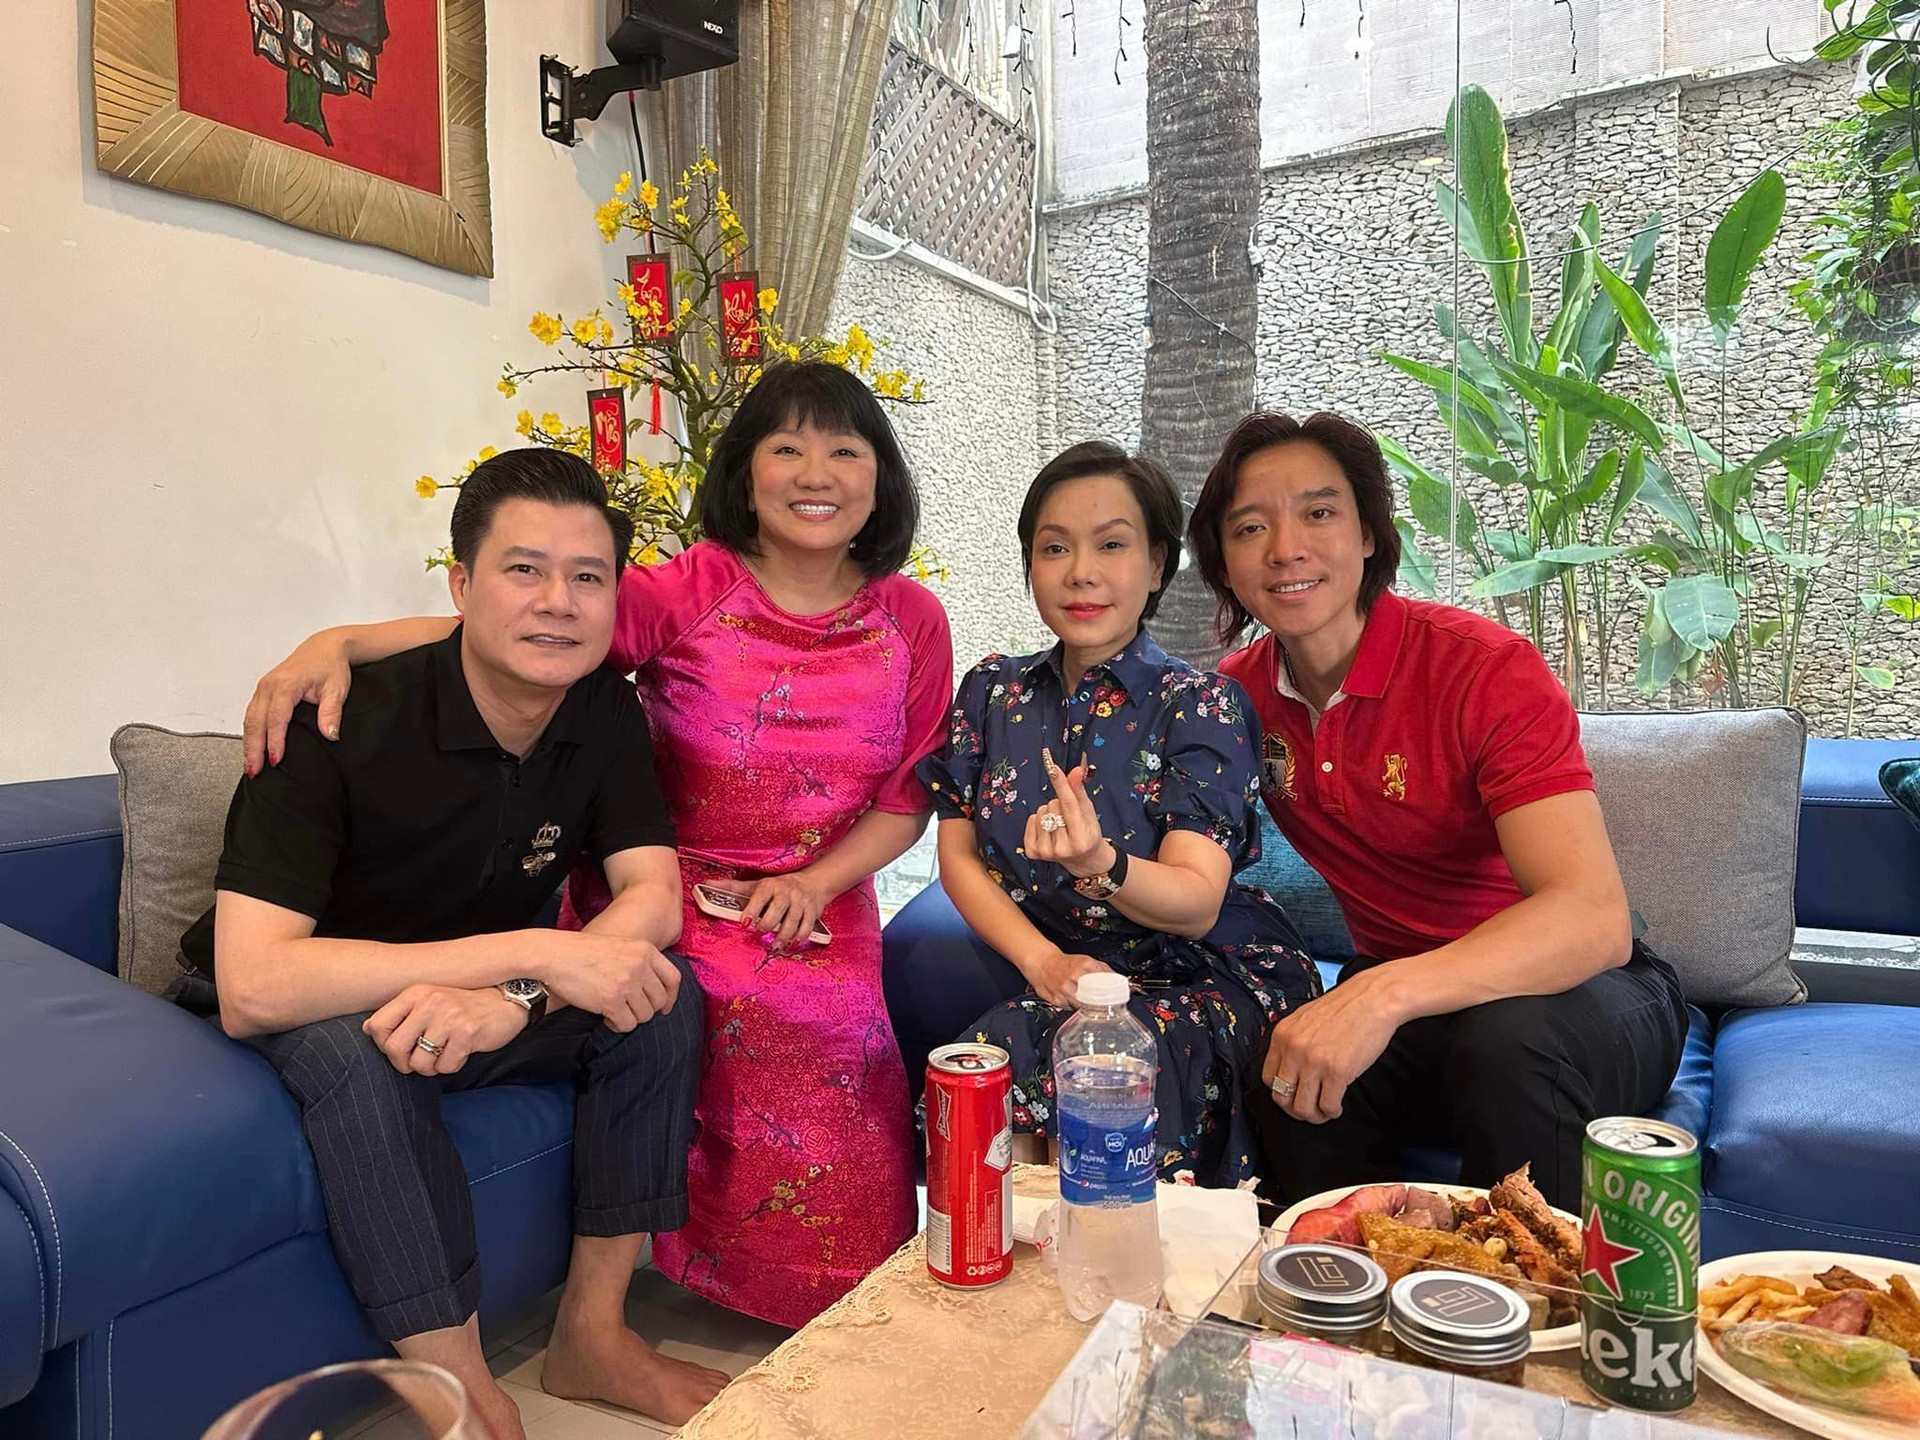 Sao Việt 31/1: Bà xã Chí Tài U70 vẫn trẻ măng khi diện áo dài - 7